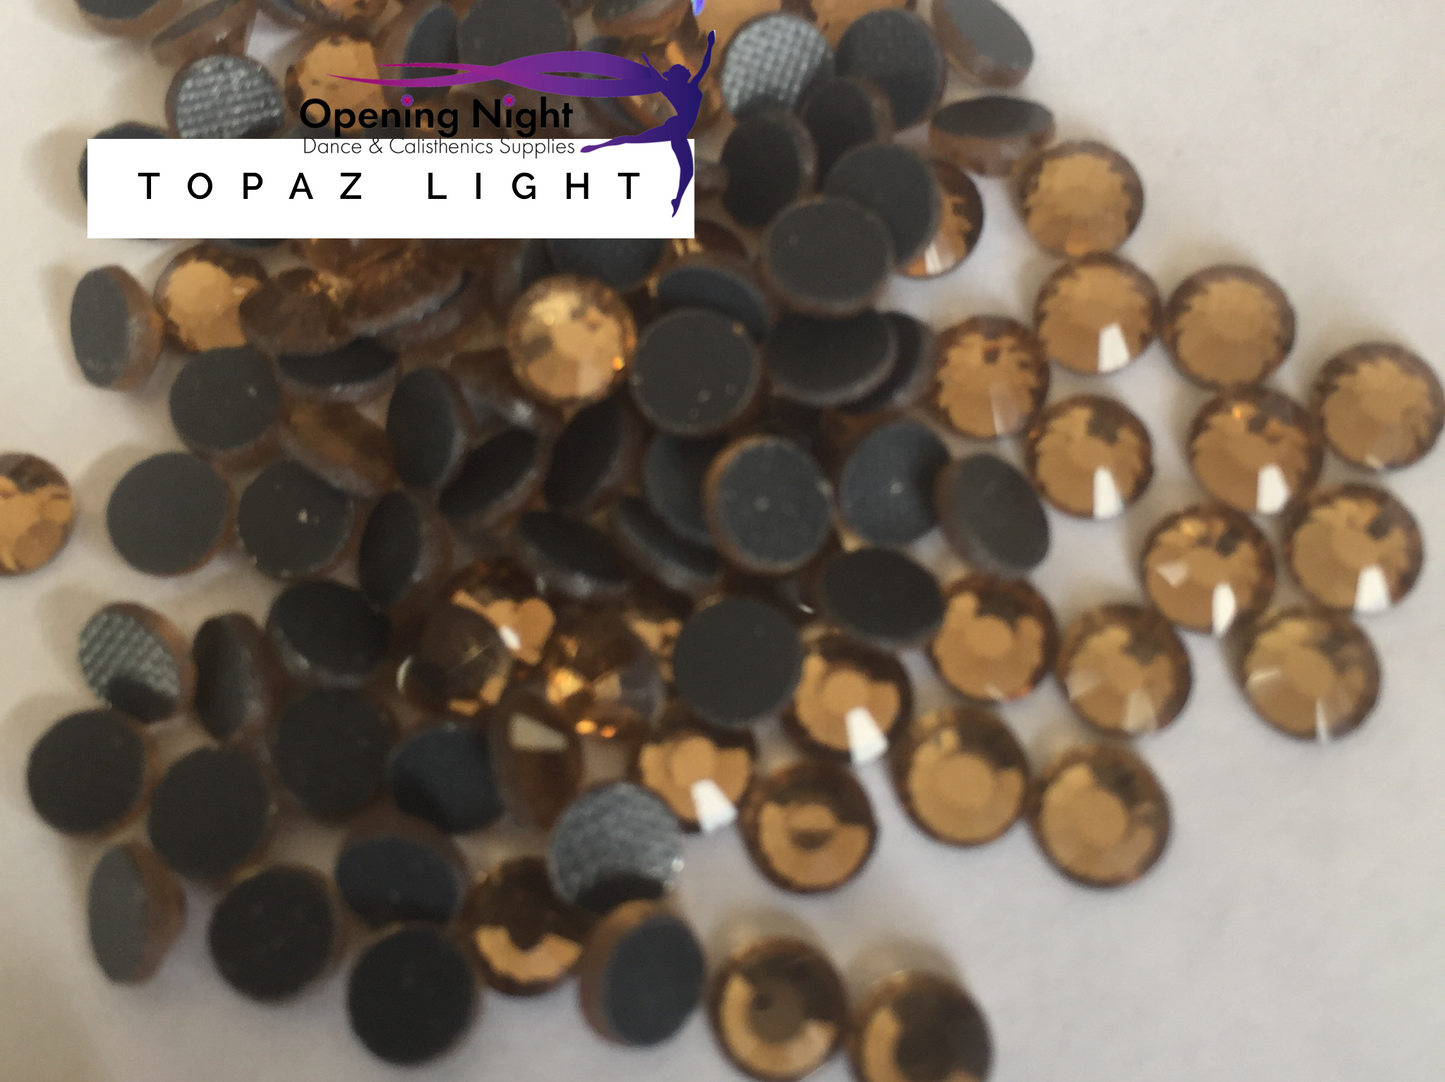 Topaz Light - Hotfix Diamante DMC Crystals